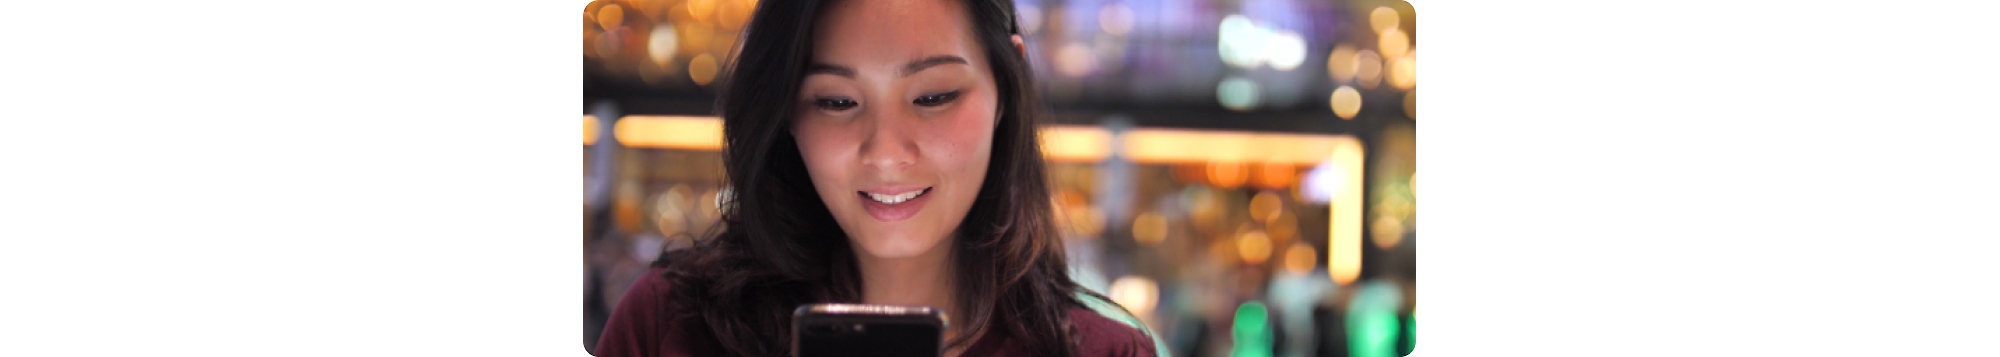 Eine junge asiatische Frau schaut auf ihr Mobiltelefon.